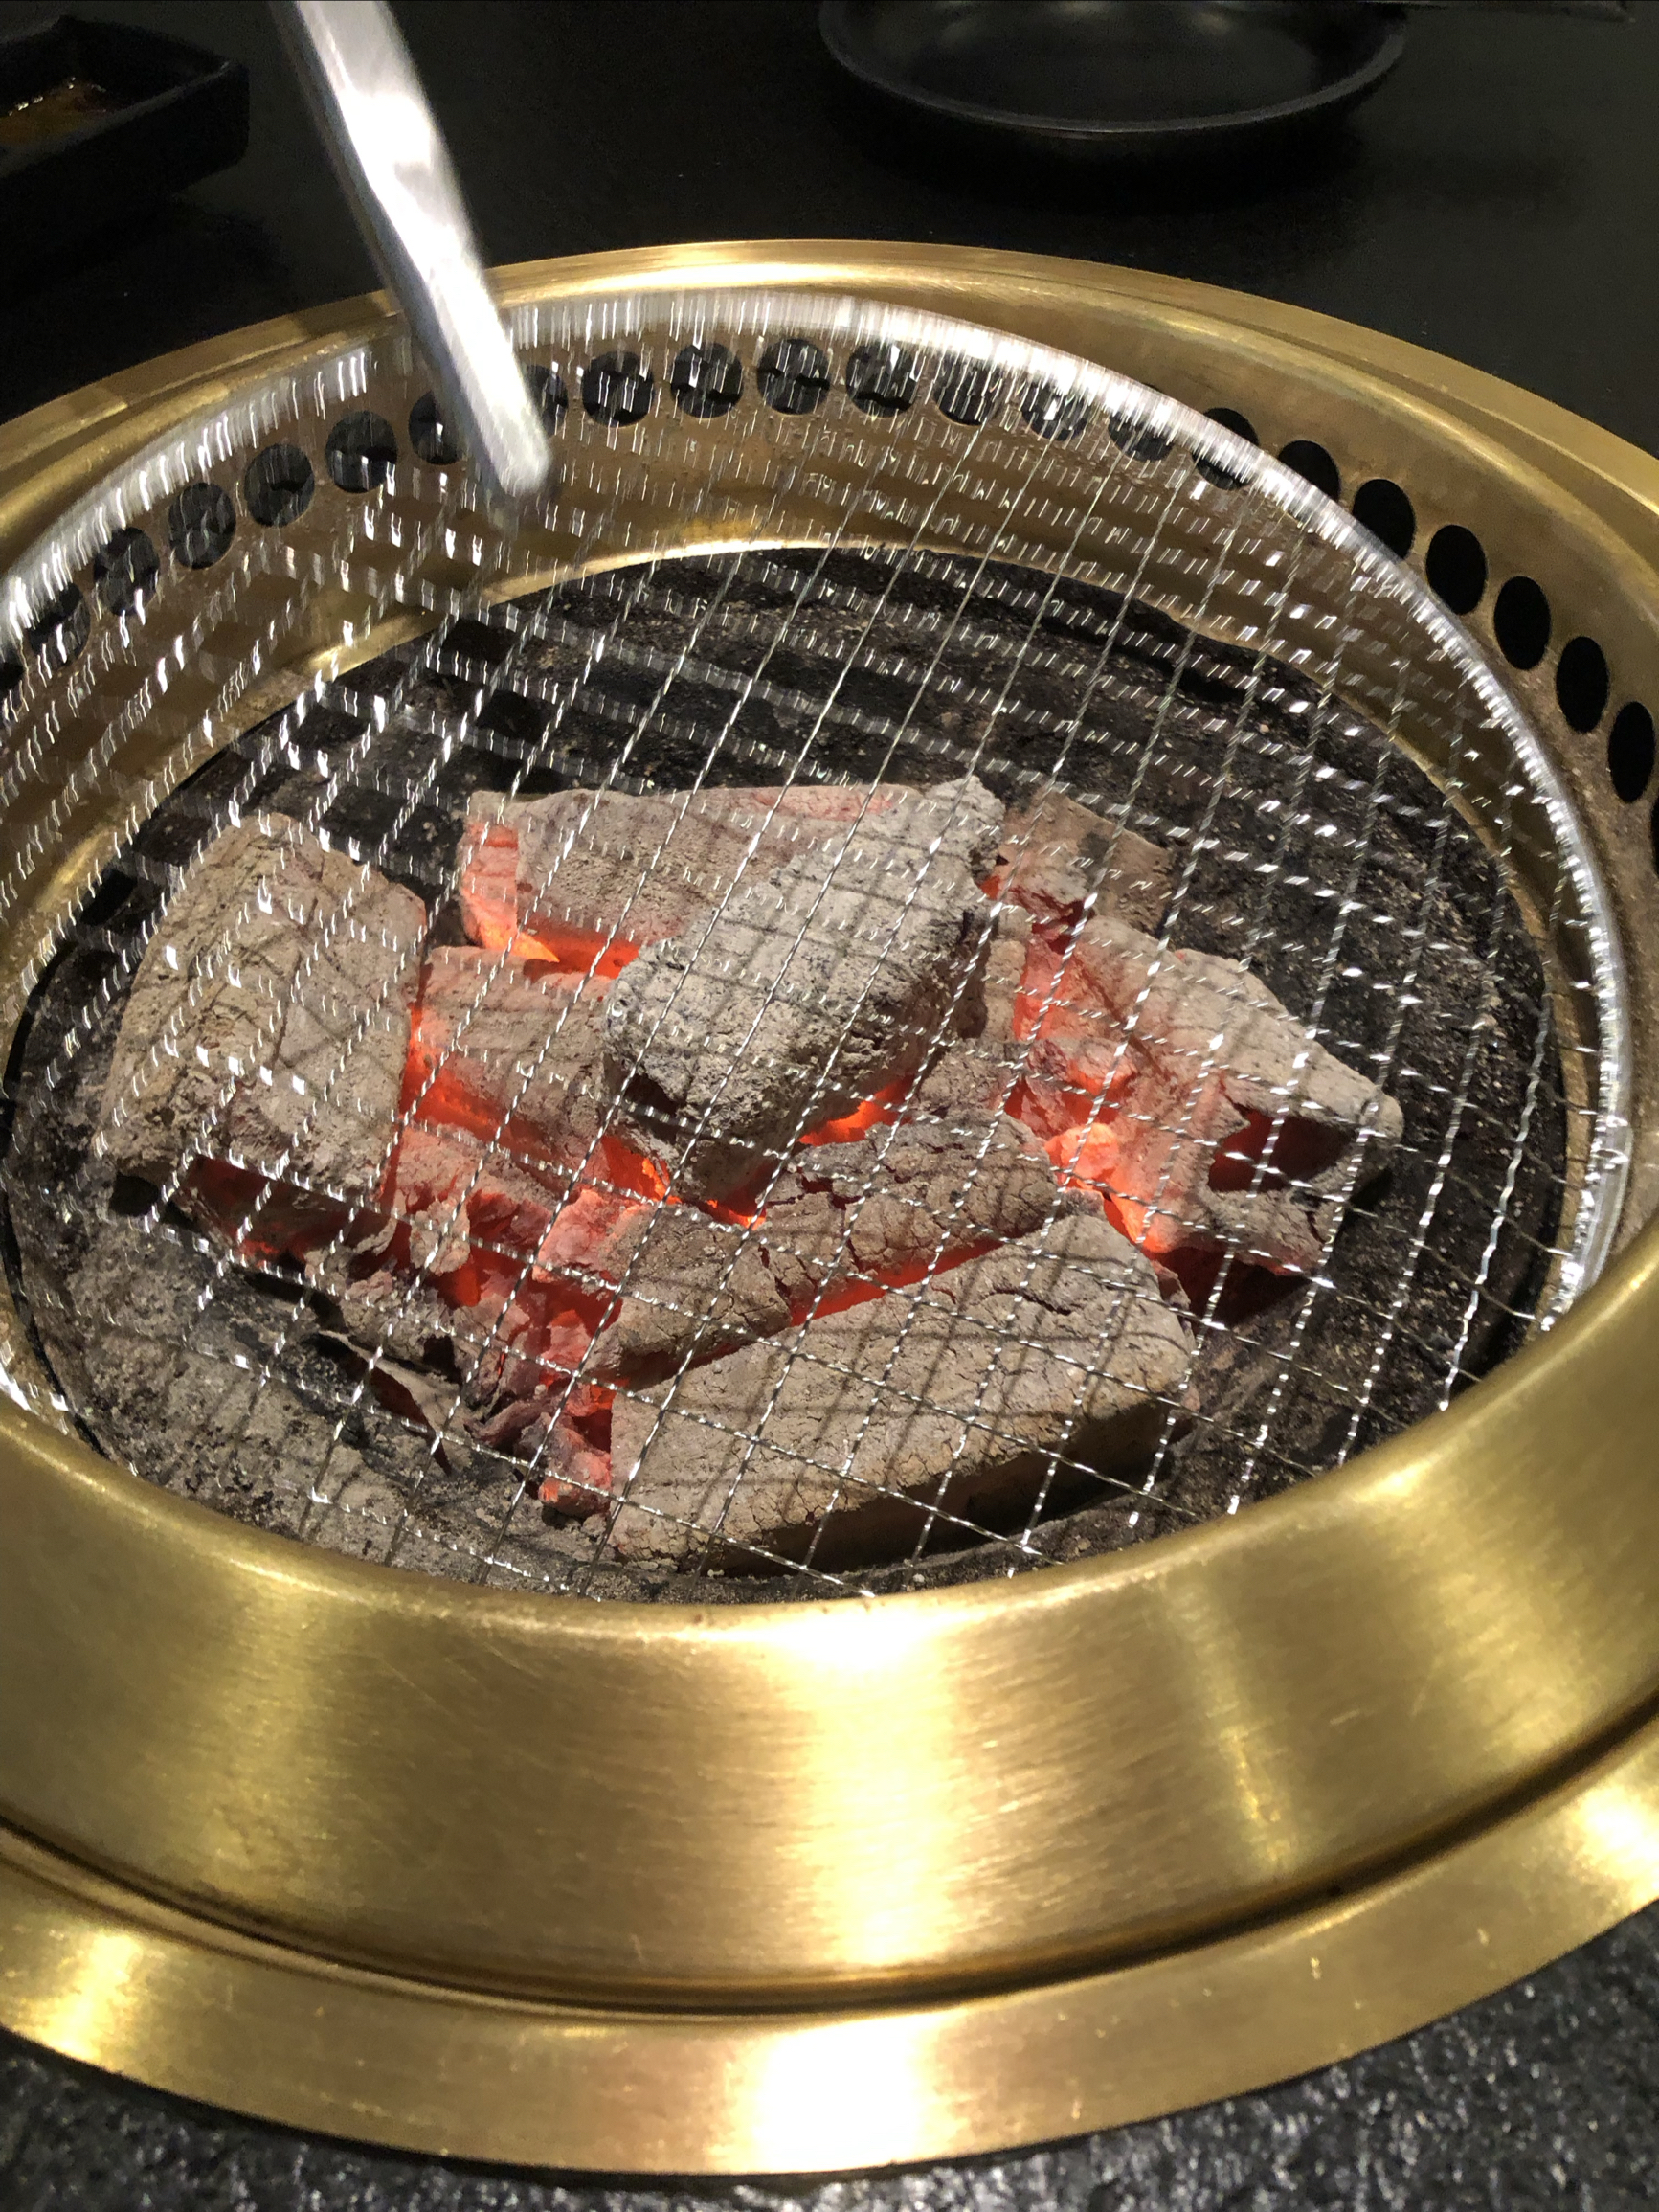 松板肉是一道家常菜，该菜的主料松板肉取自猪颈两边，因其稀少而珍贵，所以有黄金六两之称，此部位肉脂如雪